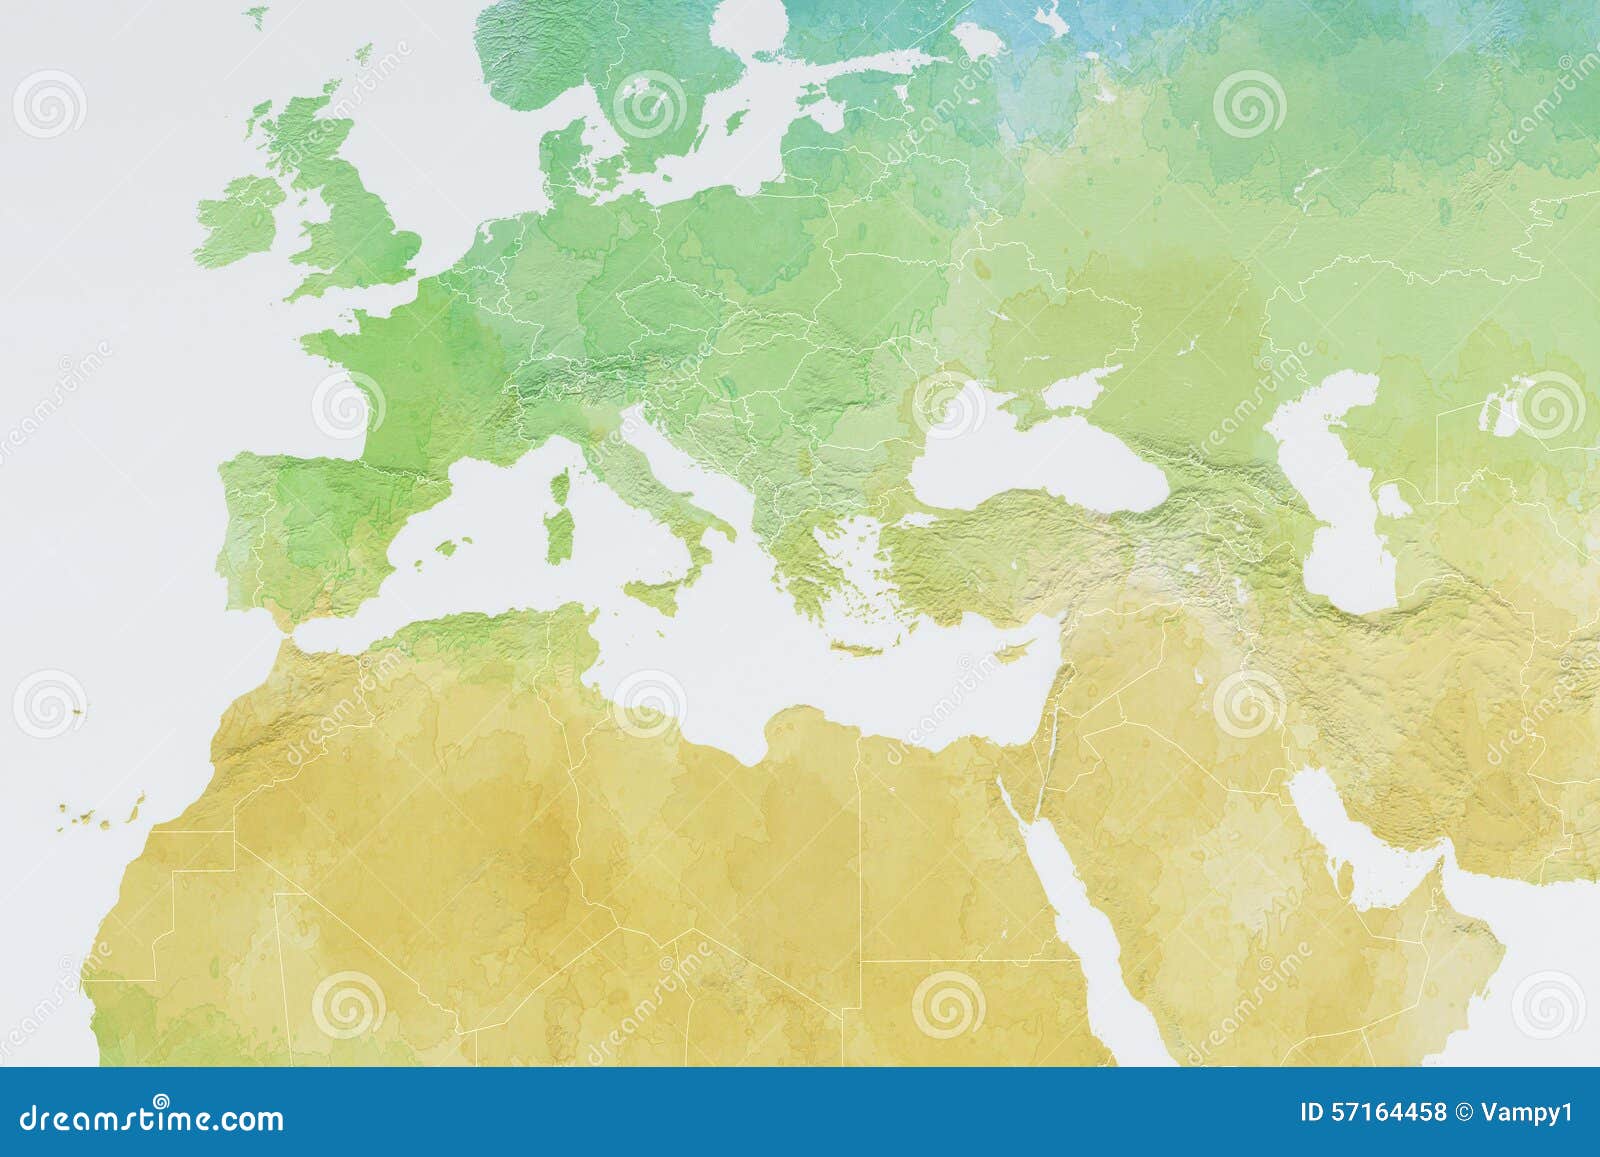 Kaart Van Europa, Noord-Afrika En Midden-Oosten, Hulpkaart Stock  Illustratie - Illustration Of Algerije, Libanon: 57164458